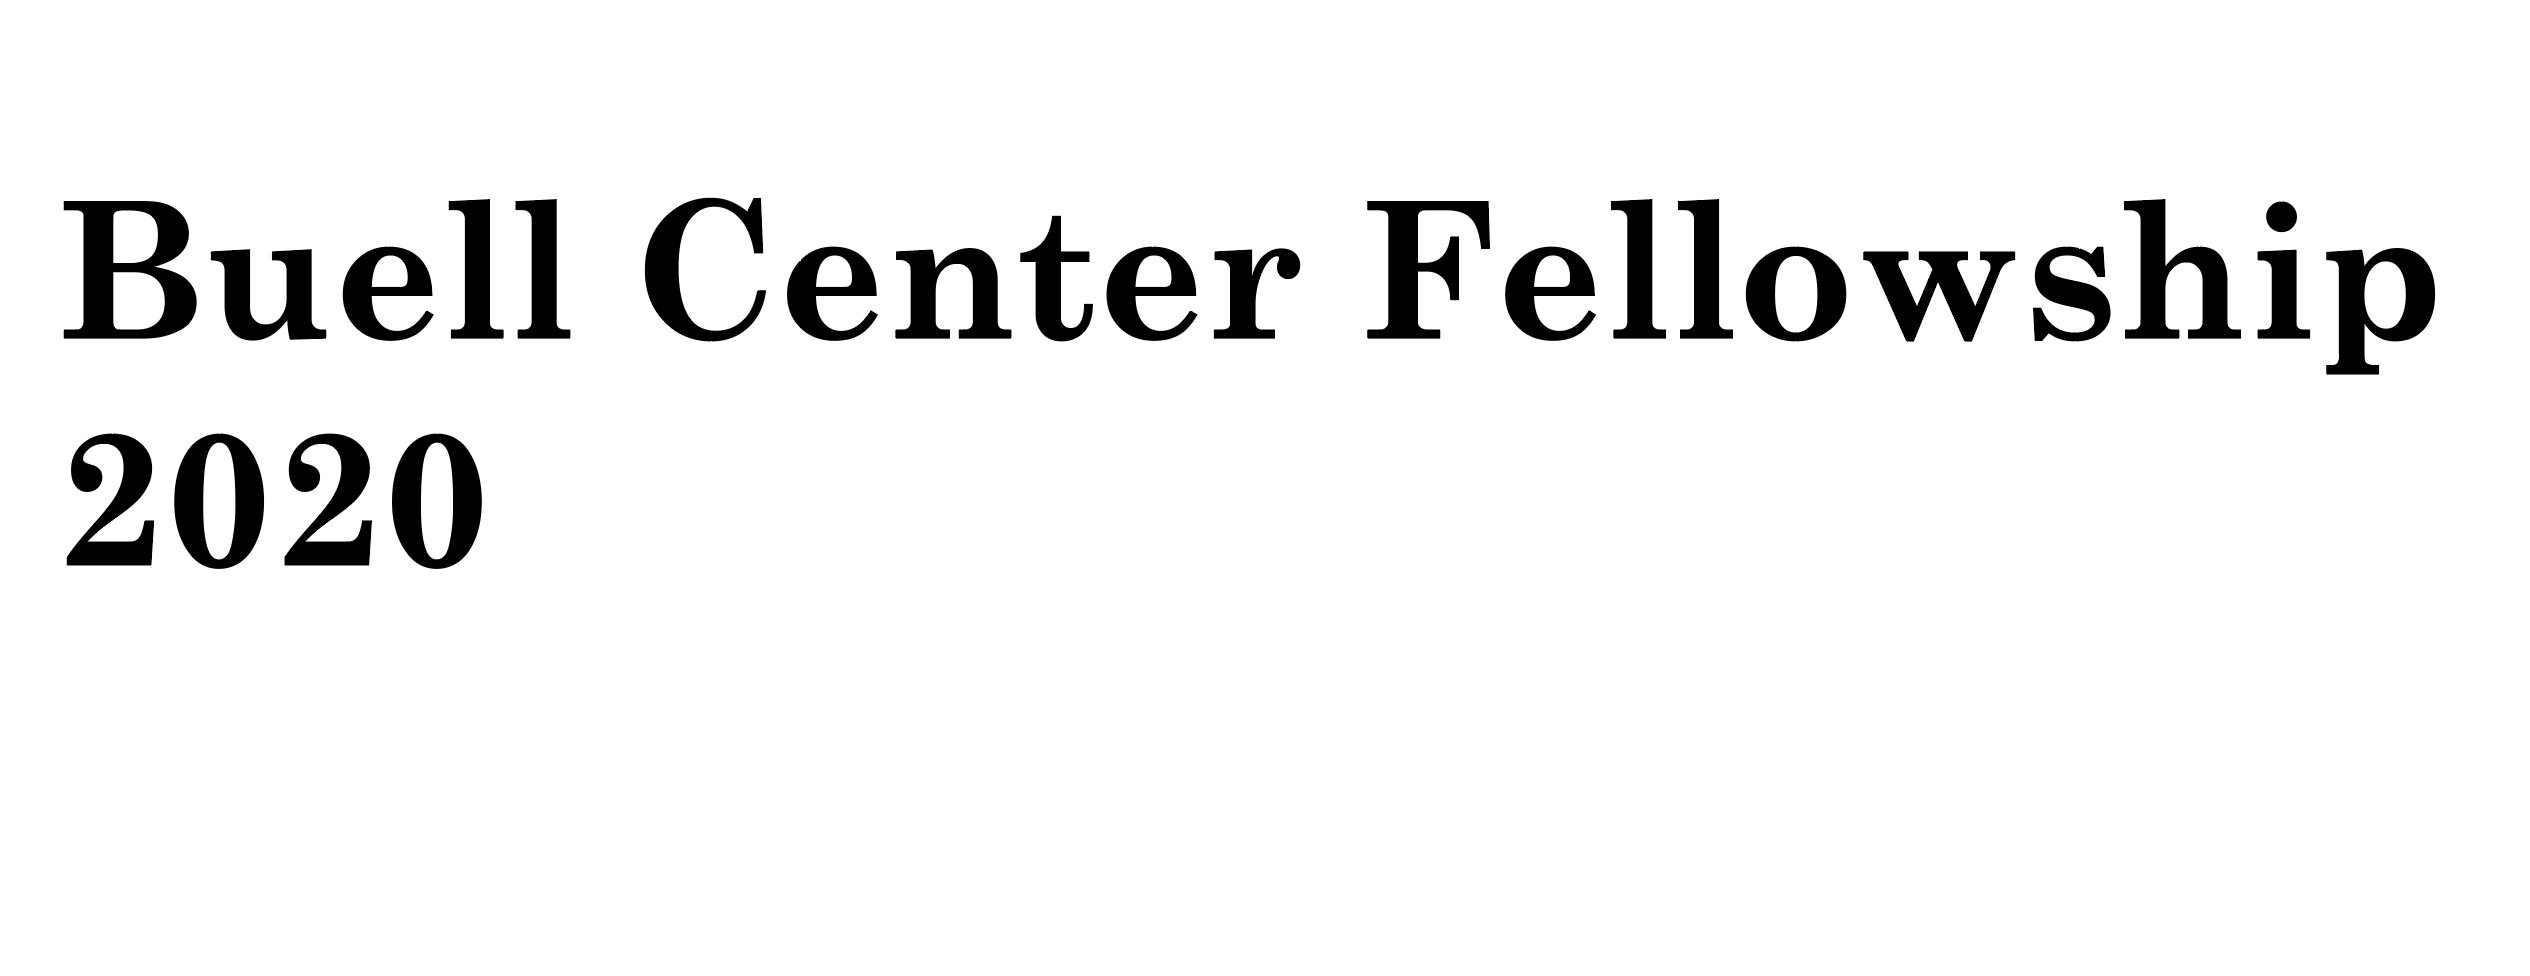 Buell Center Fellowship 2020